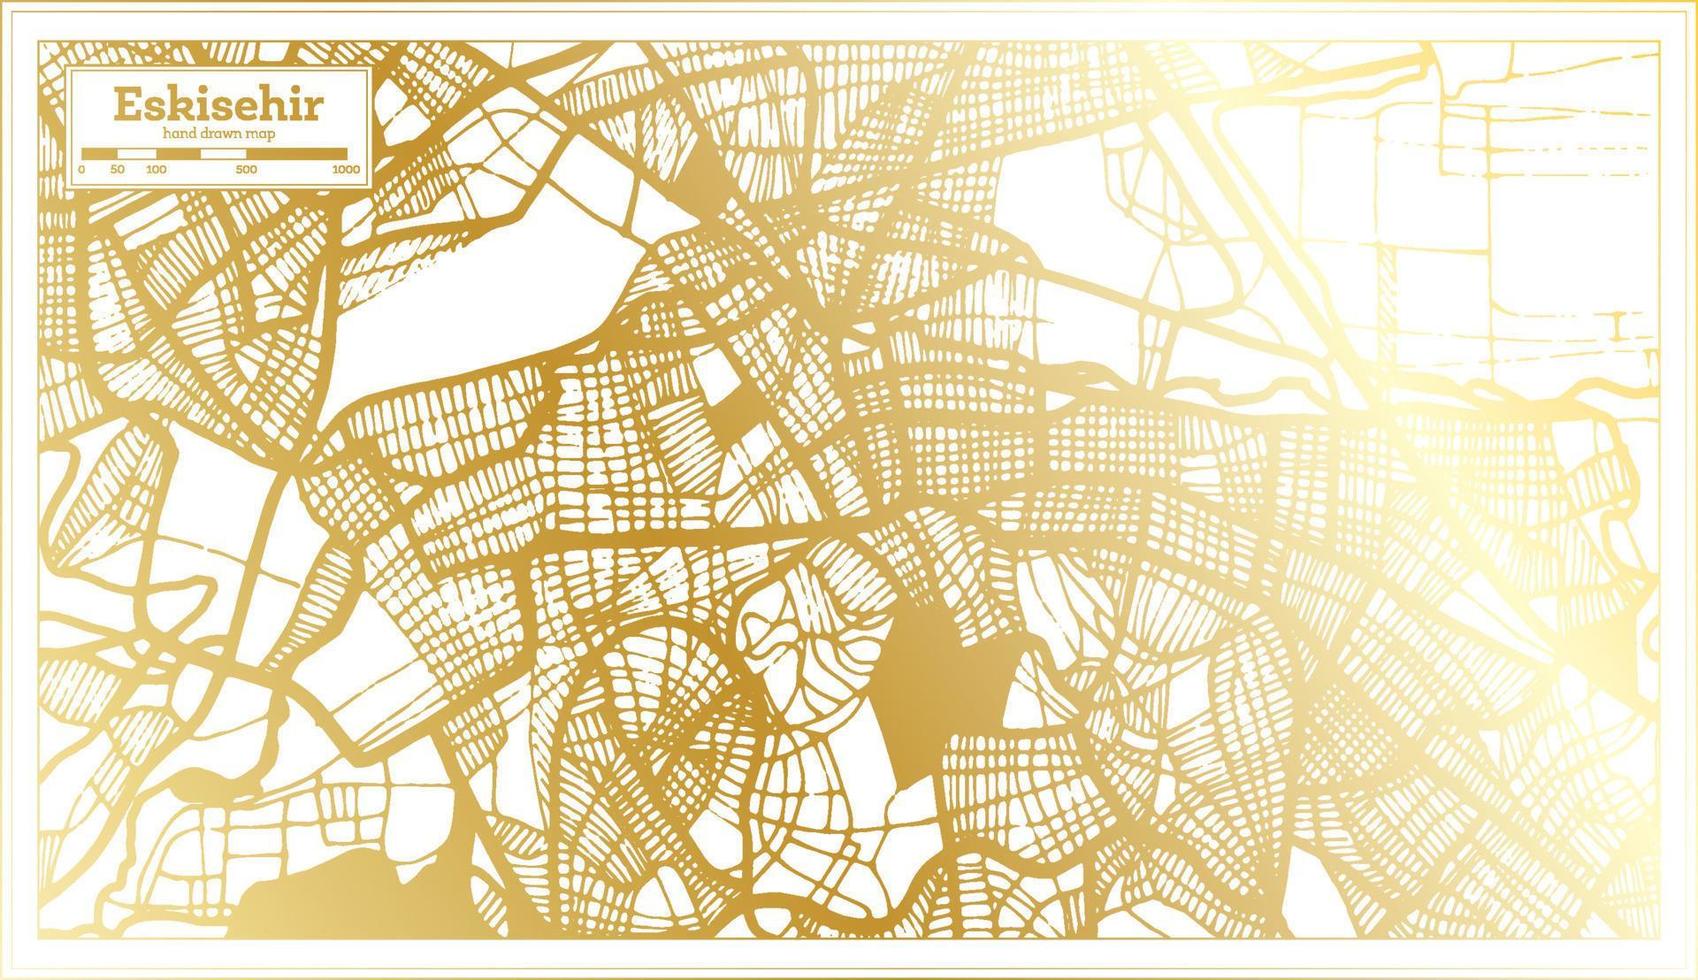 eskisehir kalkoen stad kaart in retro stijl in gouden kleur. schets kaart. vector